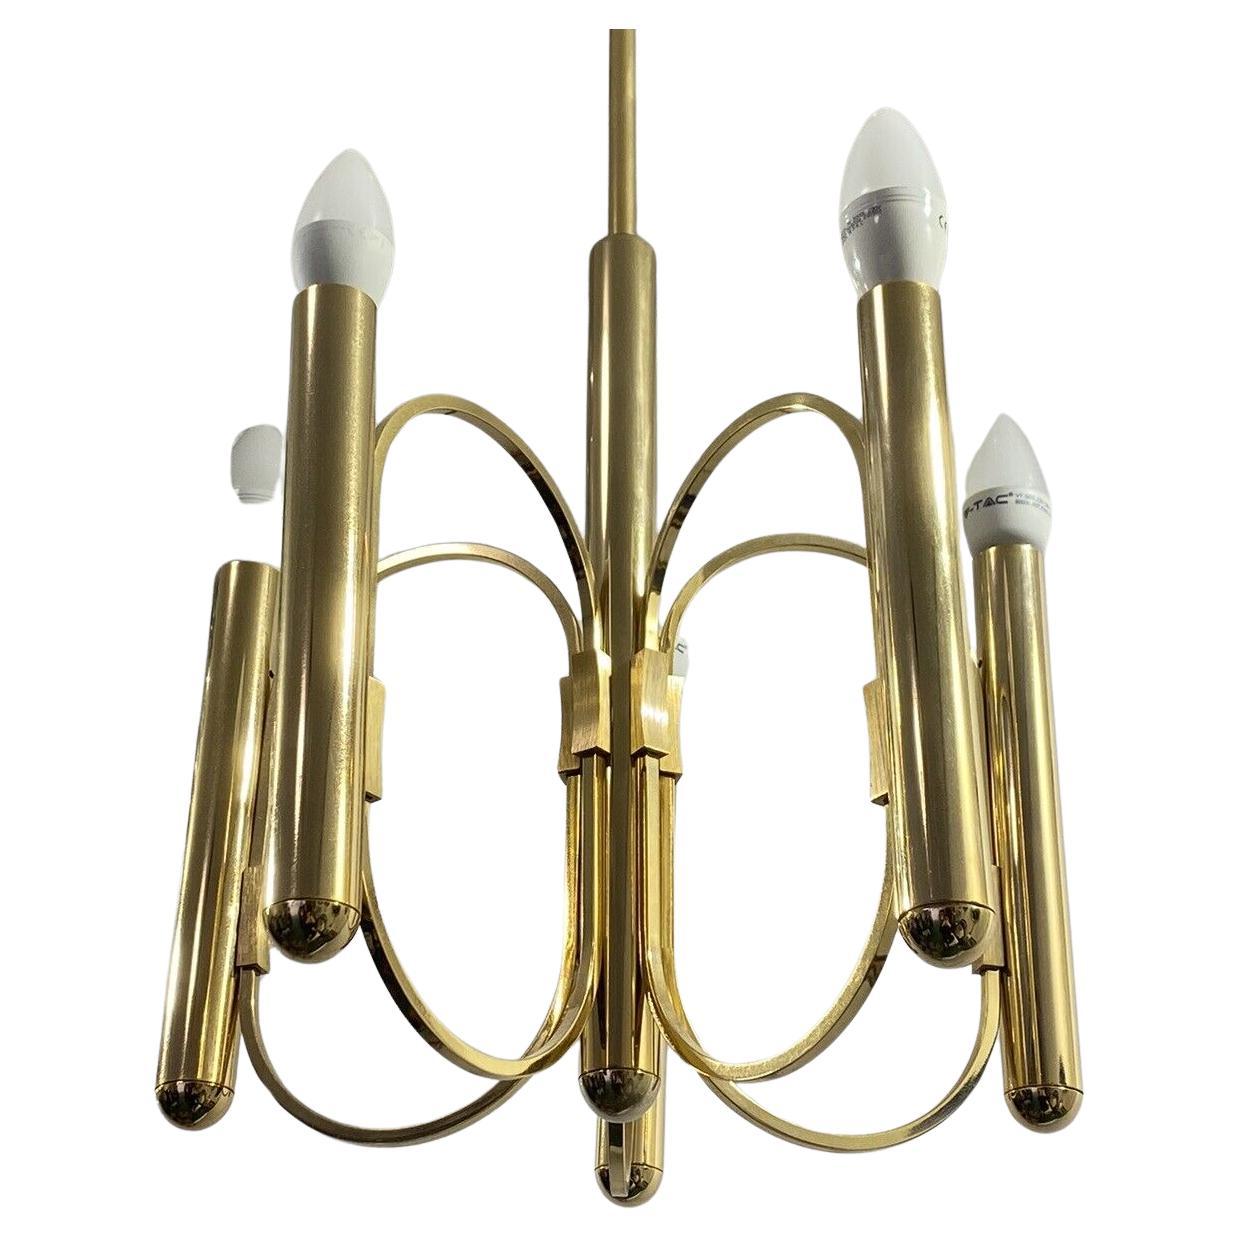 Gaetano Sciolari brass Chandelier 5 Lights design